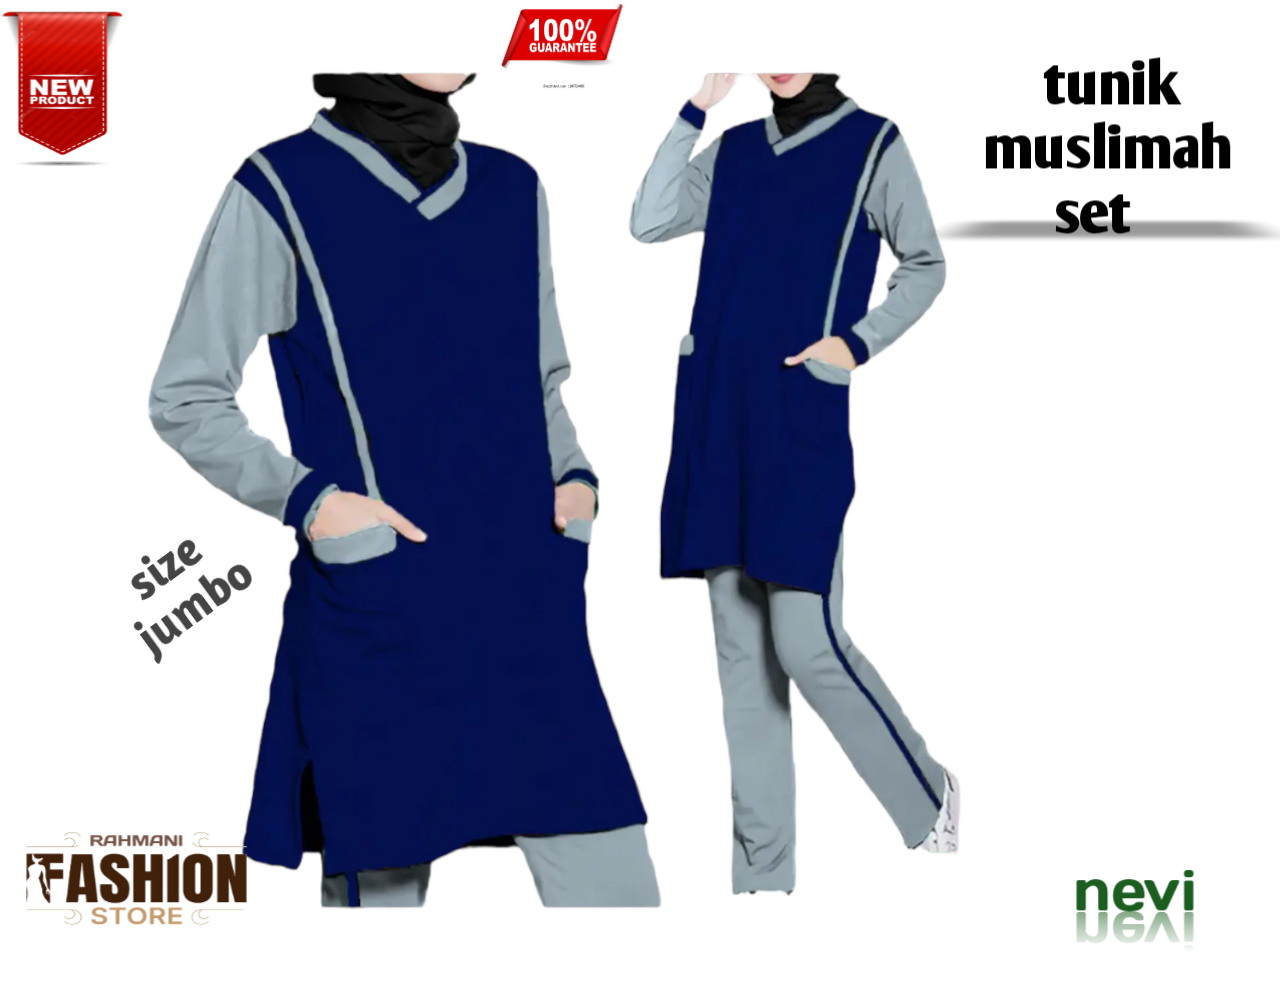 Sale 9.9, Ini Rekomendasi Sport Wear Muslim Lokal yang Bisa Kamu Coba -  Halaman all - TribunNews.com